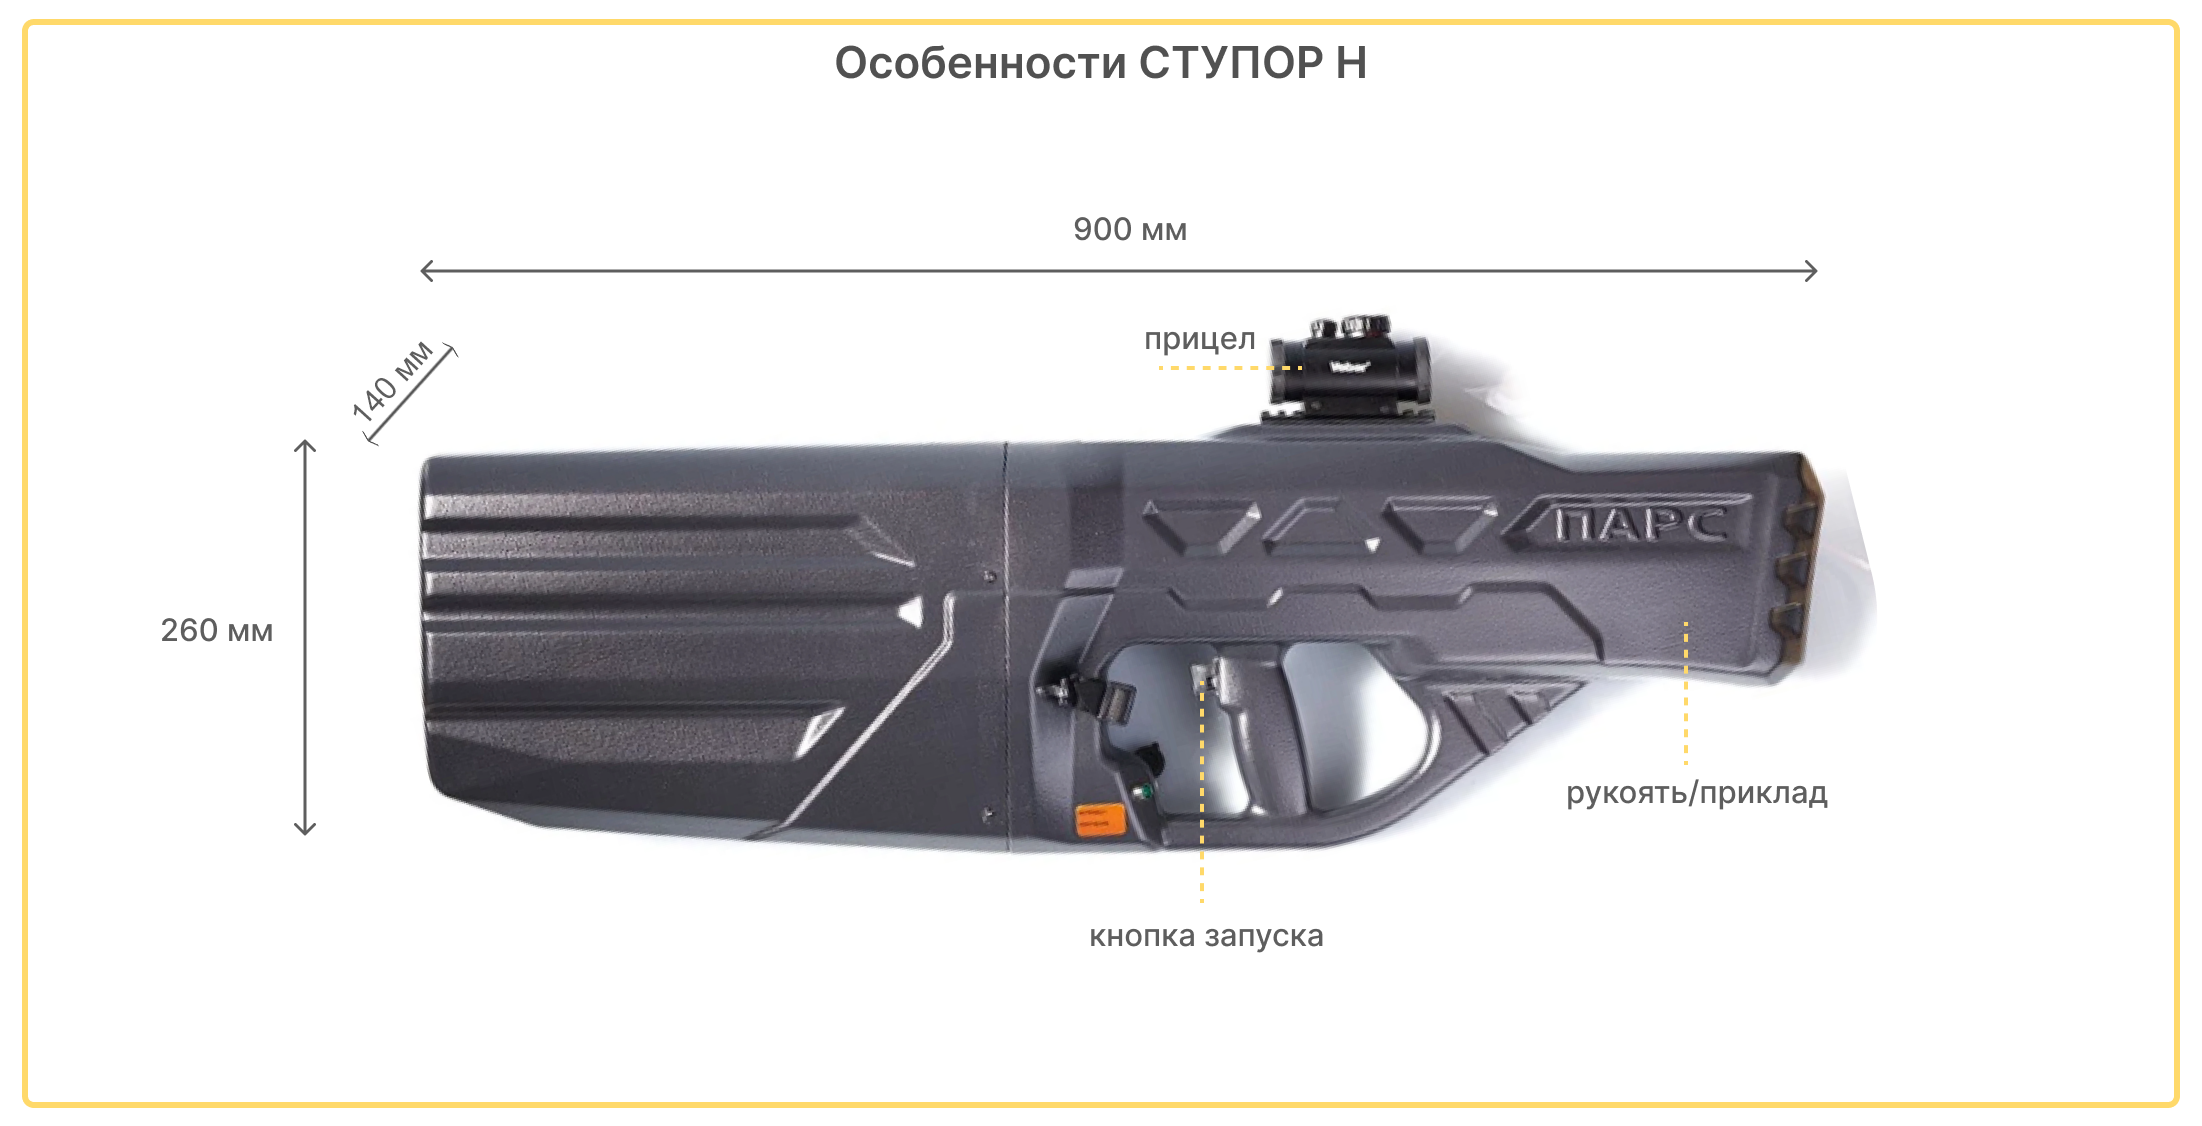 купить ружье против дронов ПАРС-Н по низкой цене в Москве